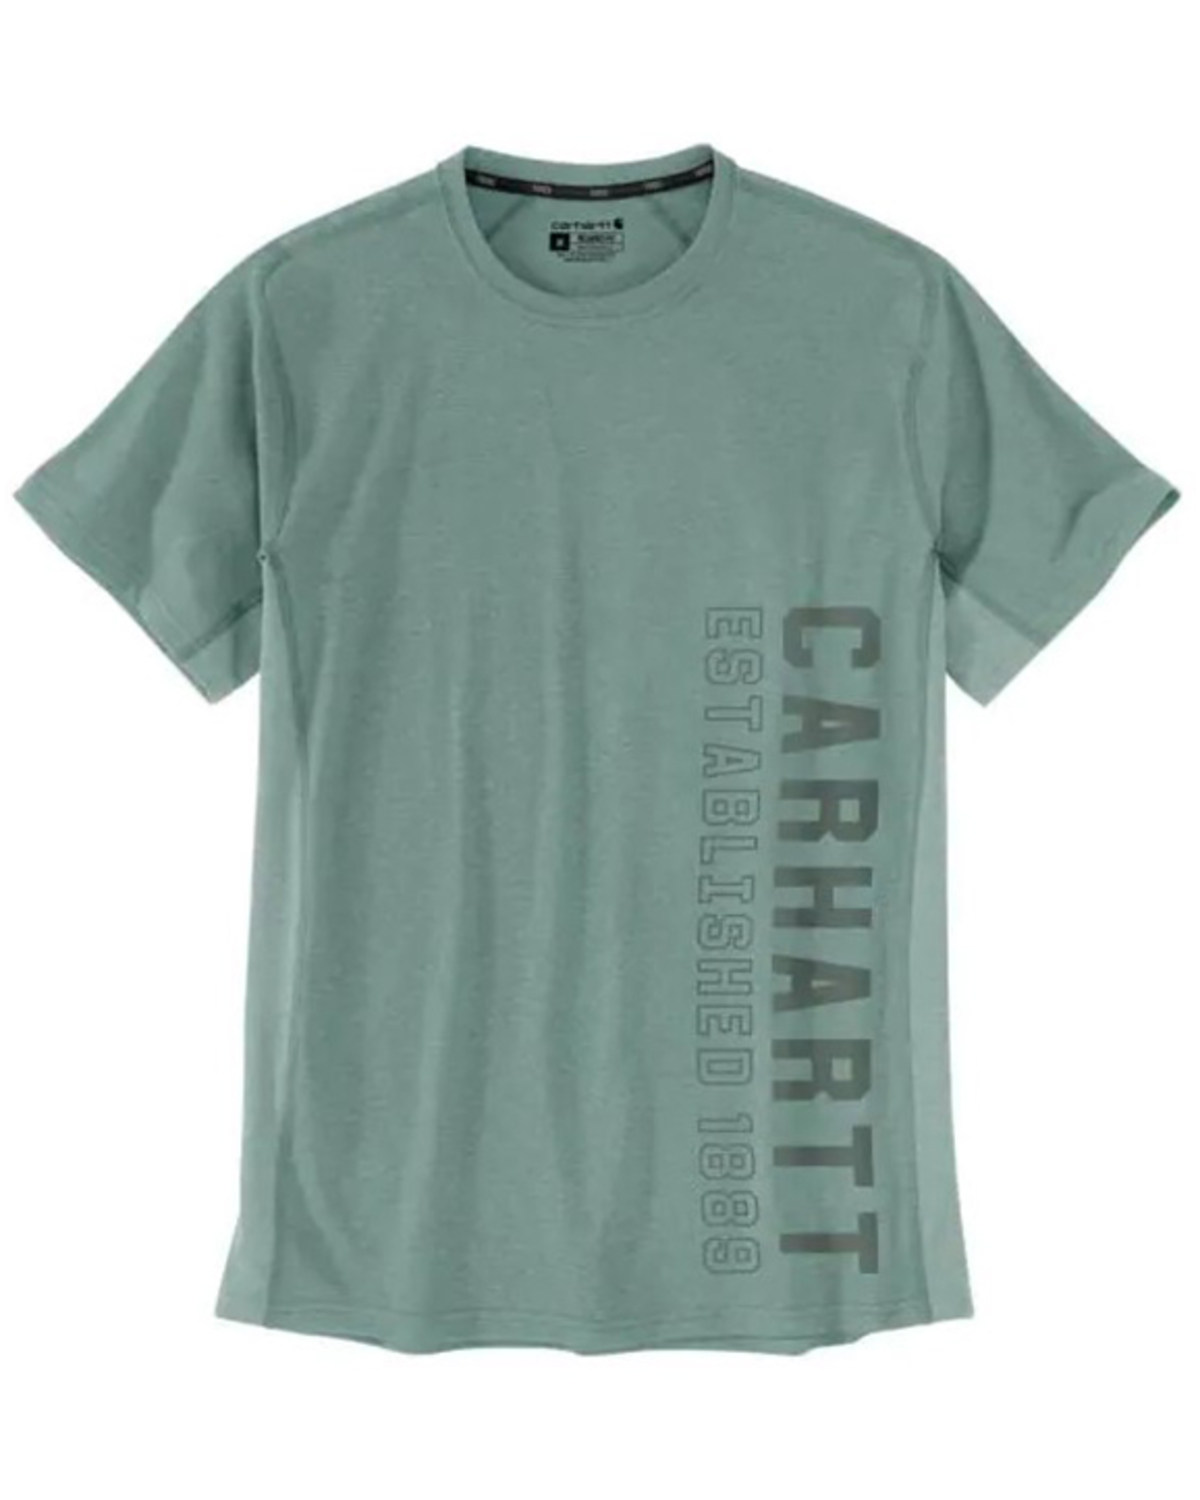 Carhartt Men's Force Midweight Logo Graphic Short Sleeve Work T-Shirt